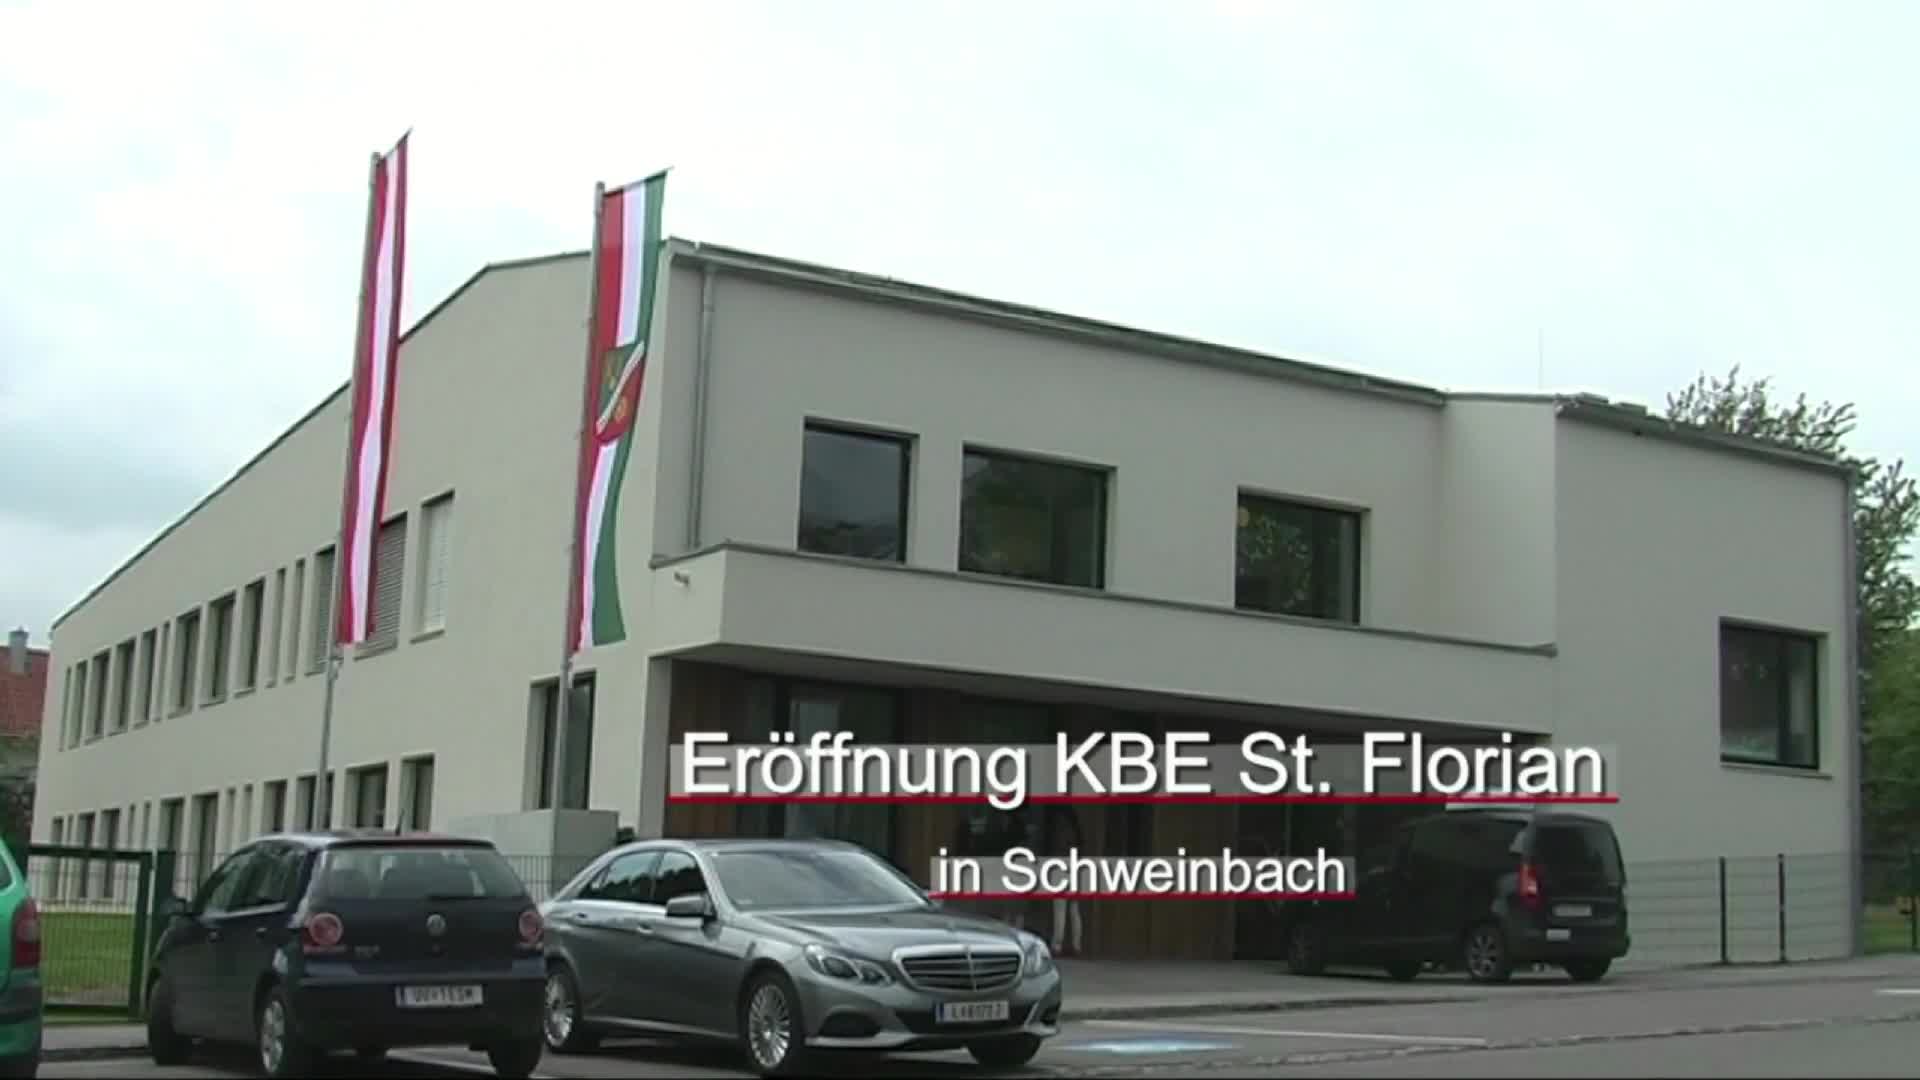 Eröffnung KBE St. Florian in Schweinbach